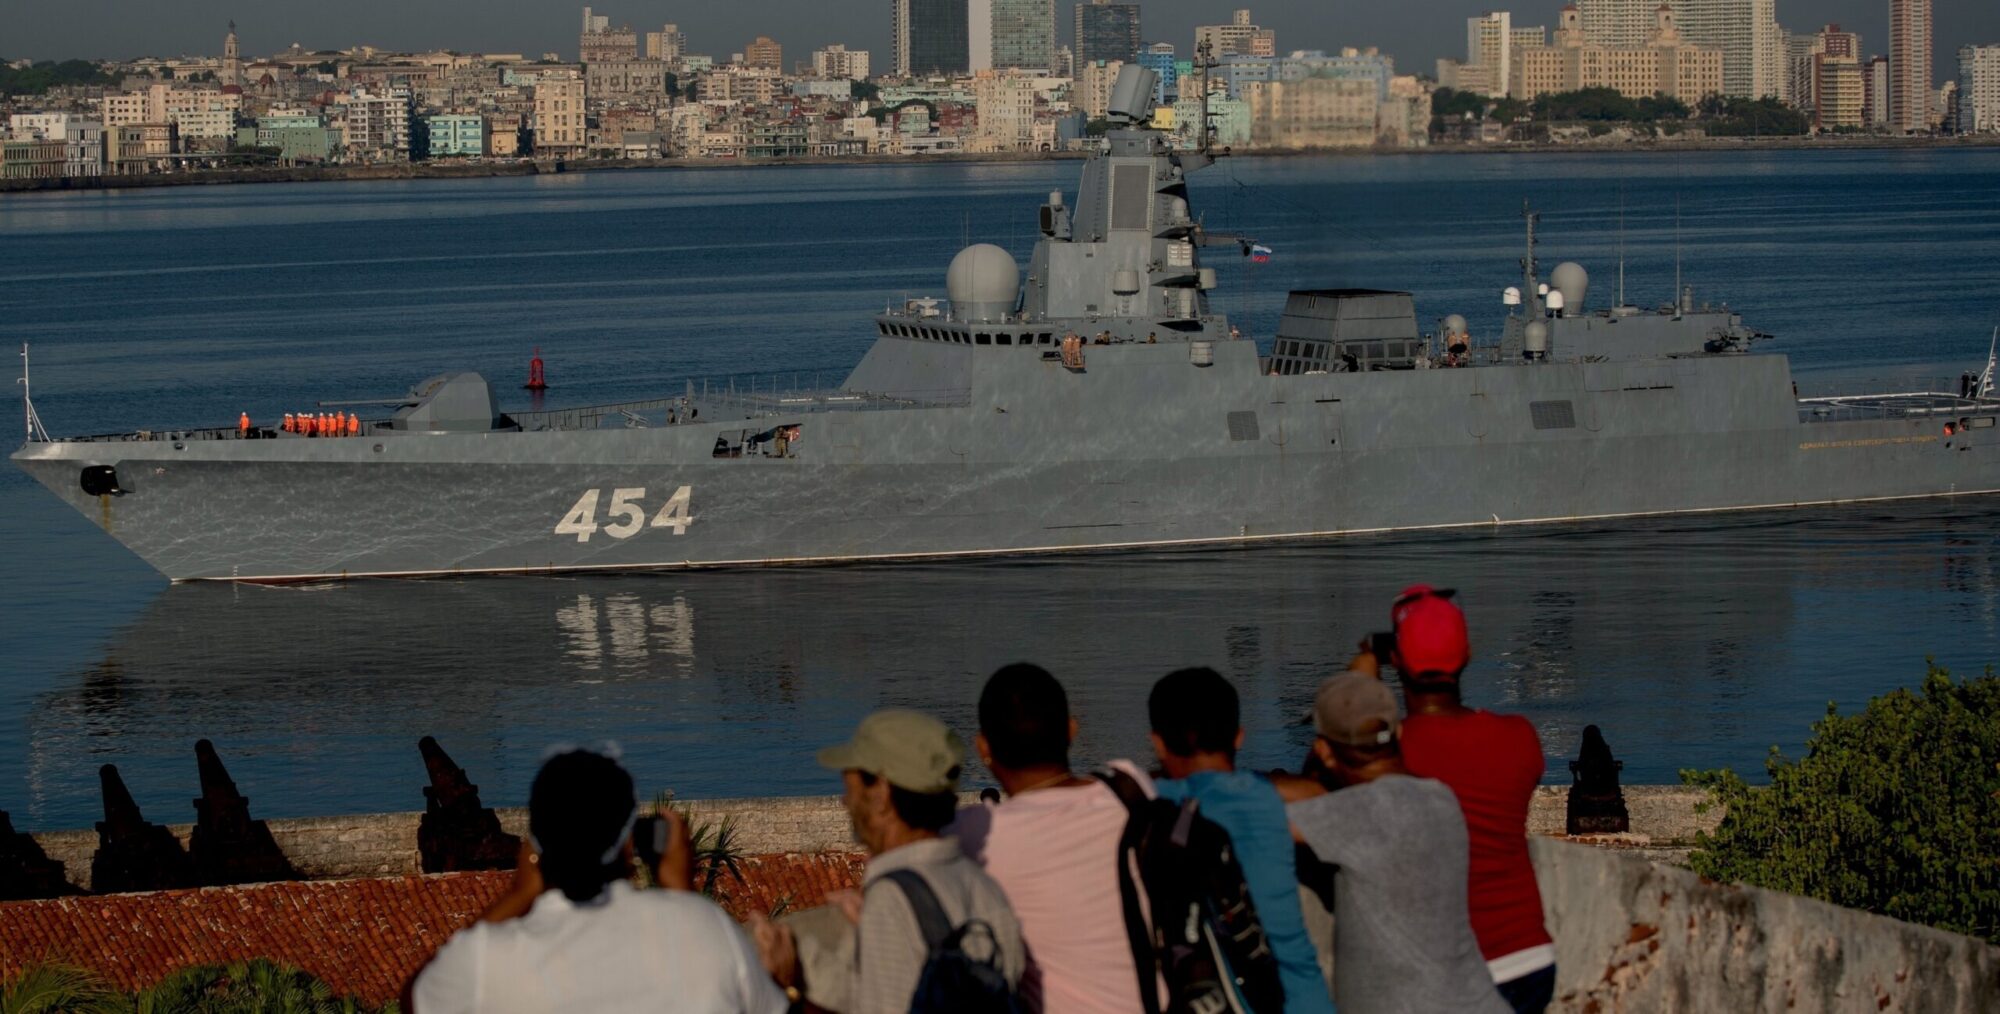 Νότια Αφρική: Στο Κέιπ Τάουν για κοινές ασκήσεις  η ρωσική φρεγάτα “Admiral Gorshkov” εν μέσω επικρίσεων